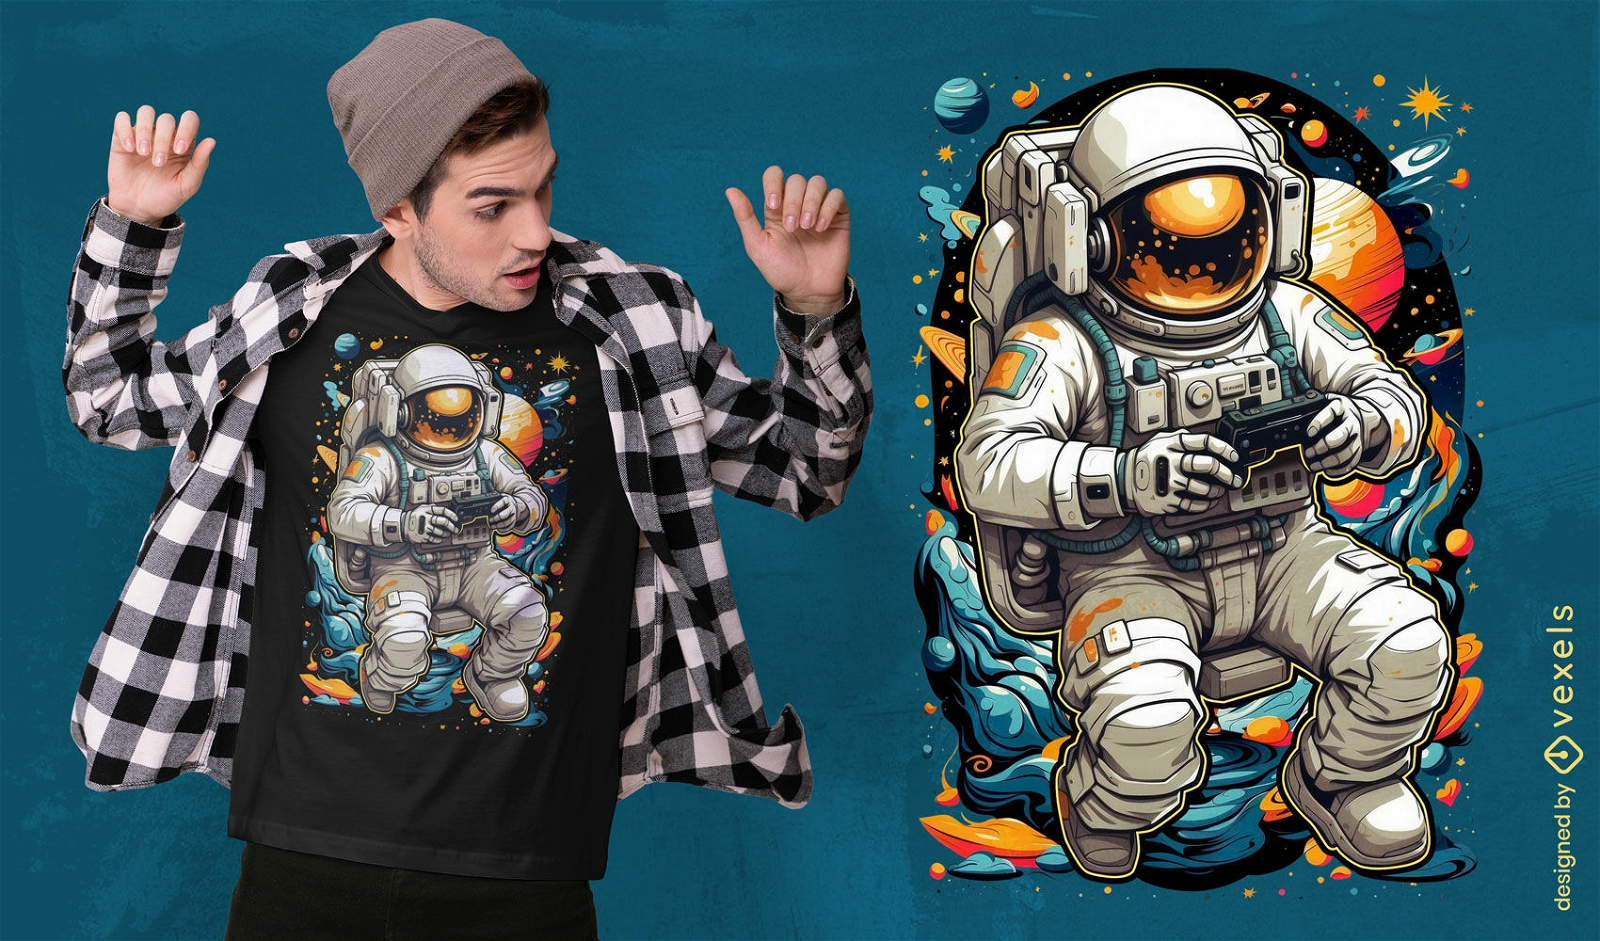 Diseño de camiseta de jugador astronauta en tonos cósmicos.